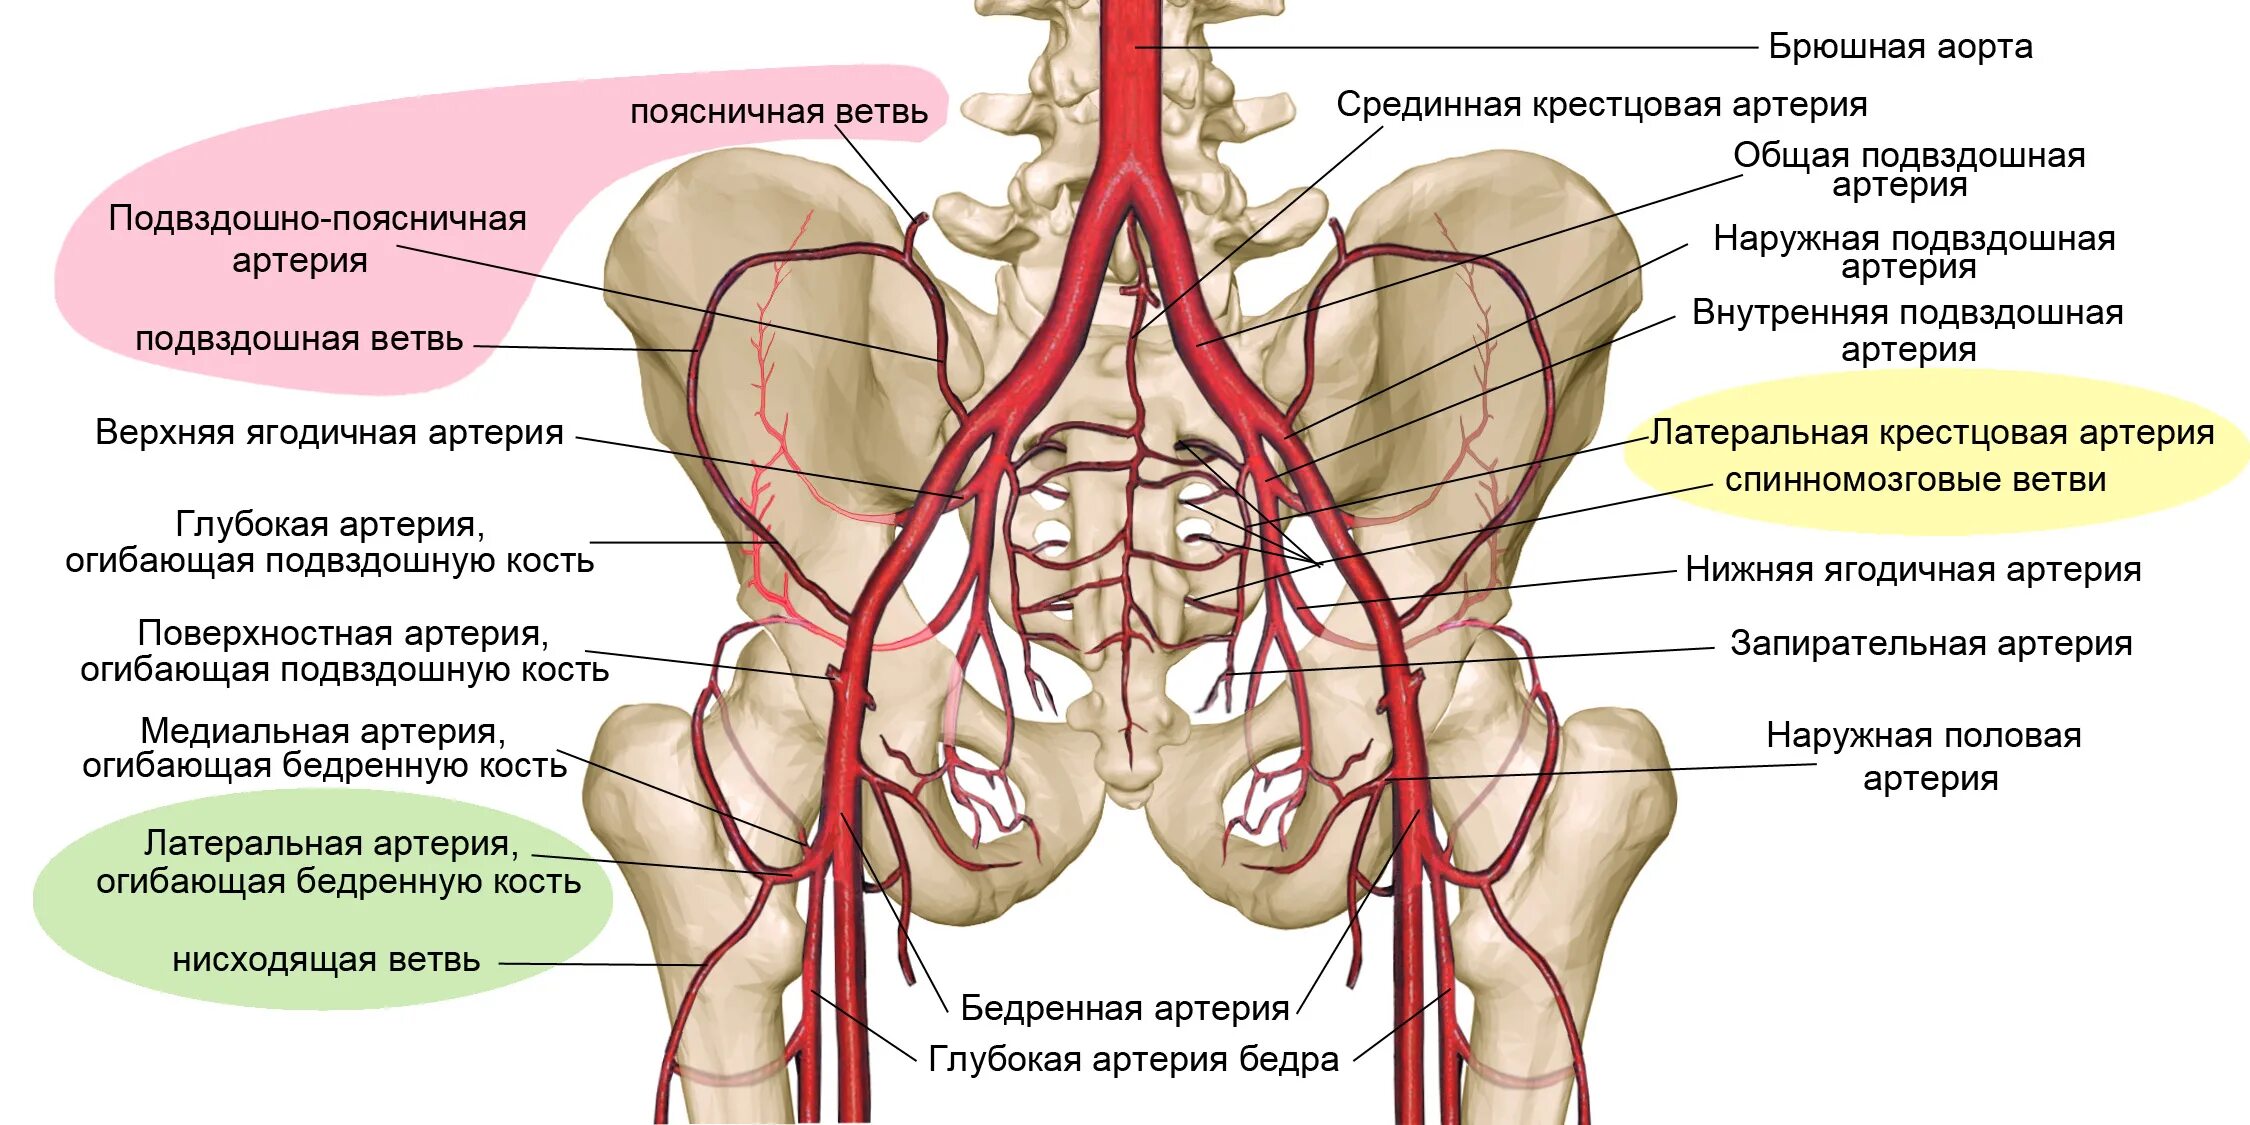 Ветви внутренней подвздошной артерии. Ветви общей подвздошной артерии схема. Ветви наружной подвздошной артерии анатомия. Ветви внутренней подвздошной артерии анатомия. По дну чего проложена артерия жизни